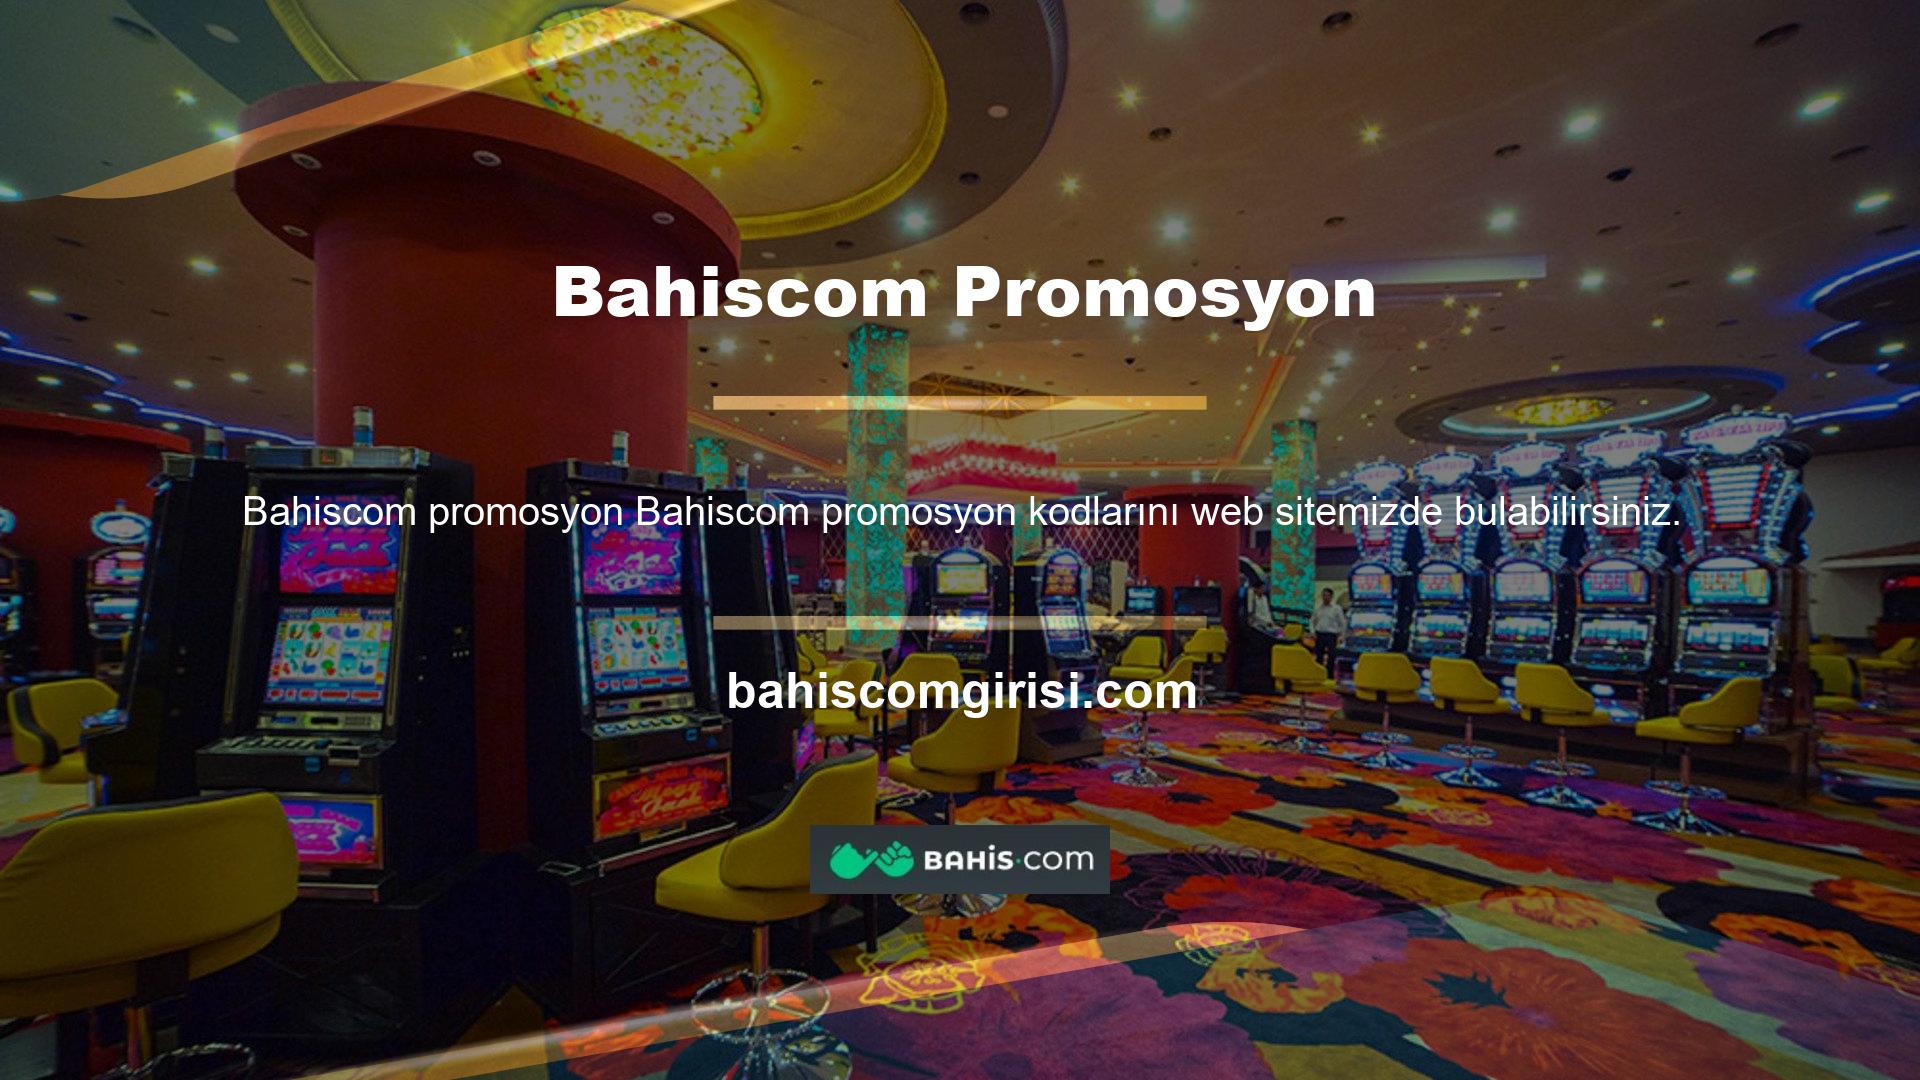 Bahiscom promosyon kodunu kullanarak web sitesine kayıt olduğunuzda casino web sitesinden bir bonus alacaksınız